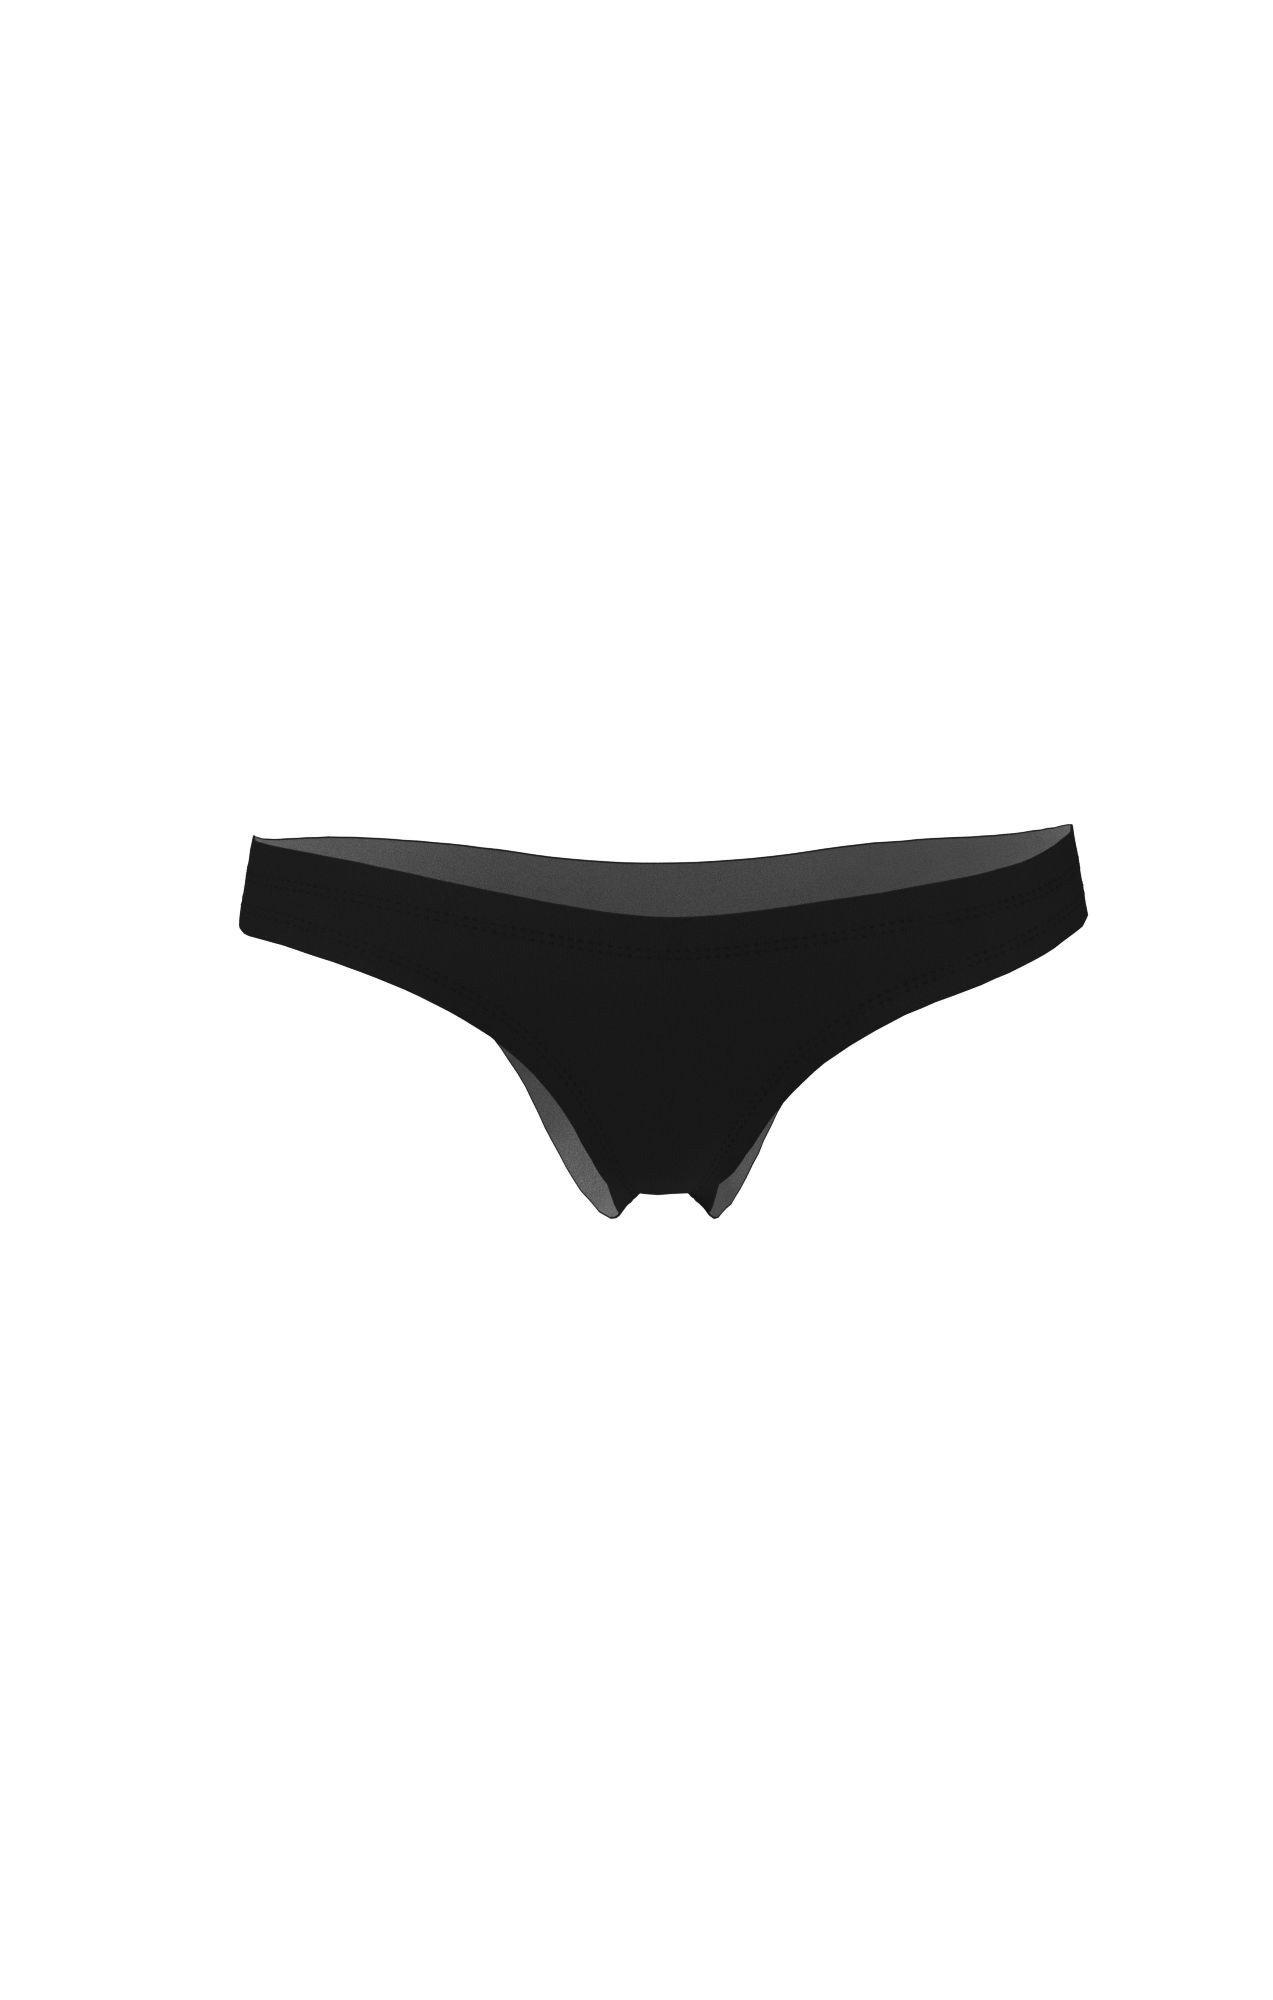 Bikiniunterteil Unisex Schwarz Leicht M von NIKE